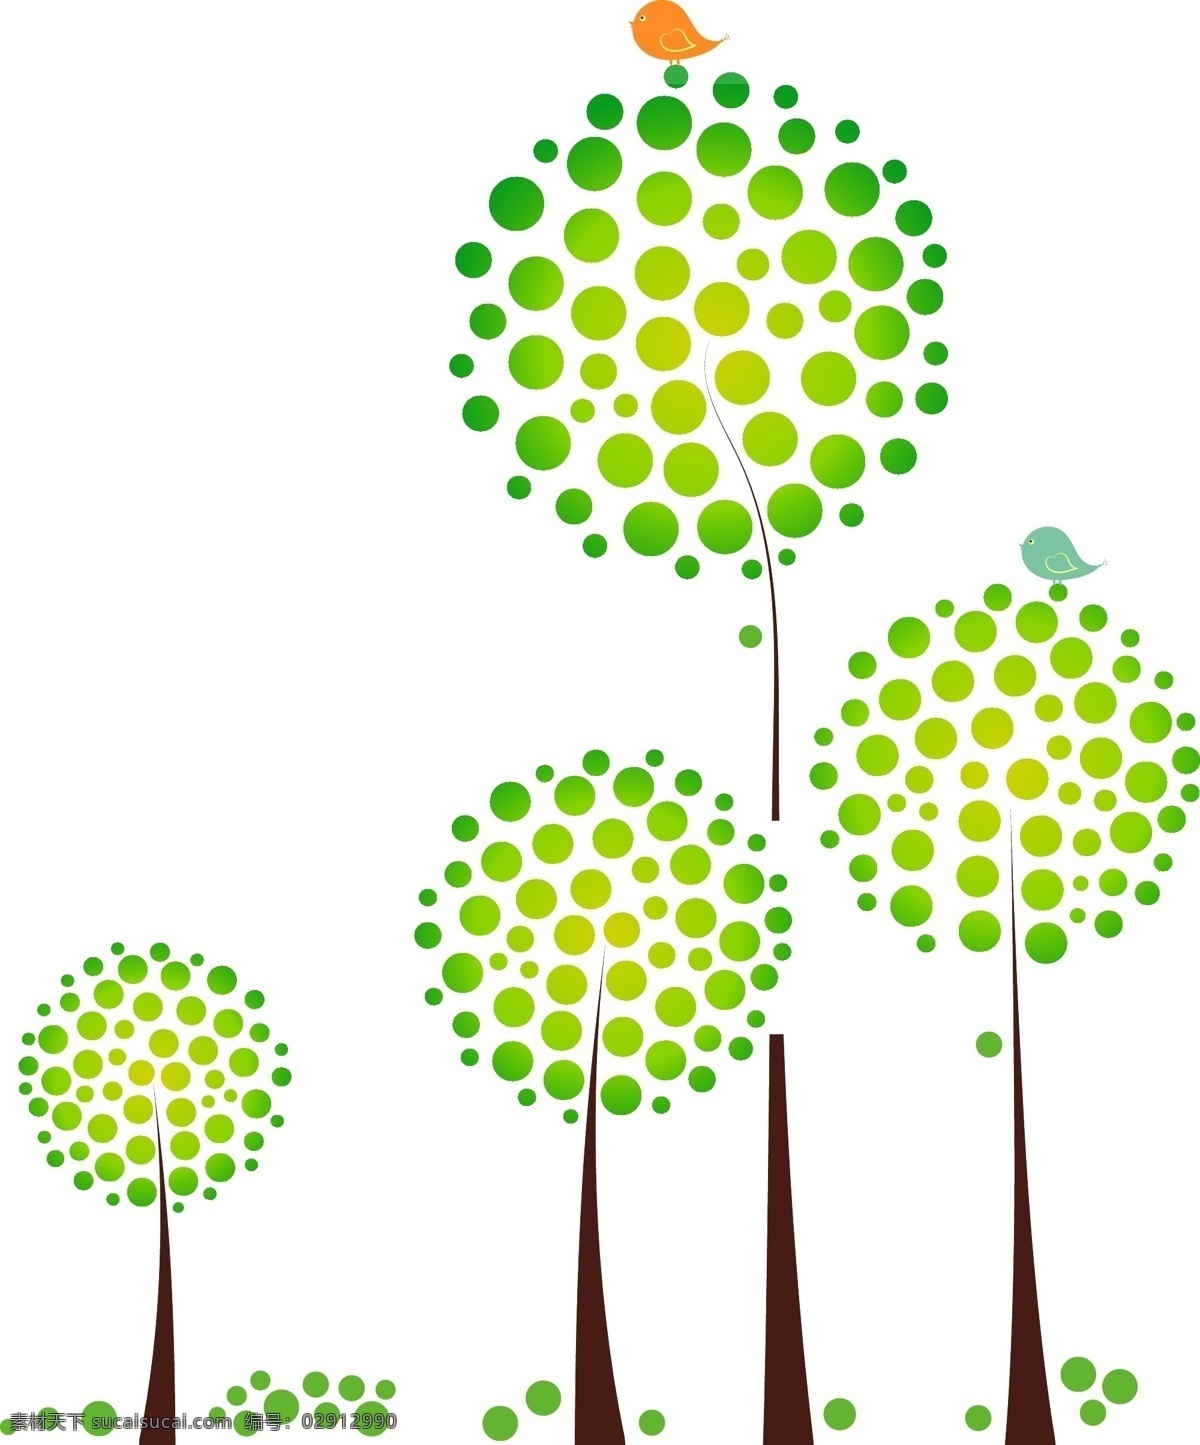 植树节 创意 绿色 树木 简约风格 卡通可爱风格 植树 树 小鸟 草绿色 创意树木 圆圈 矢量树